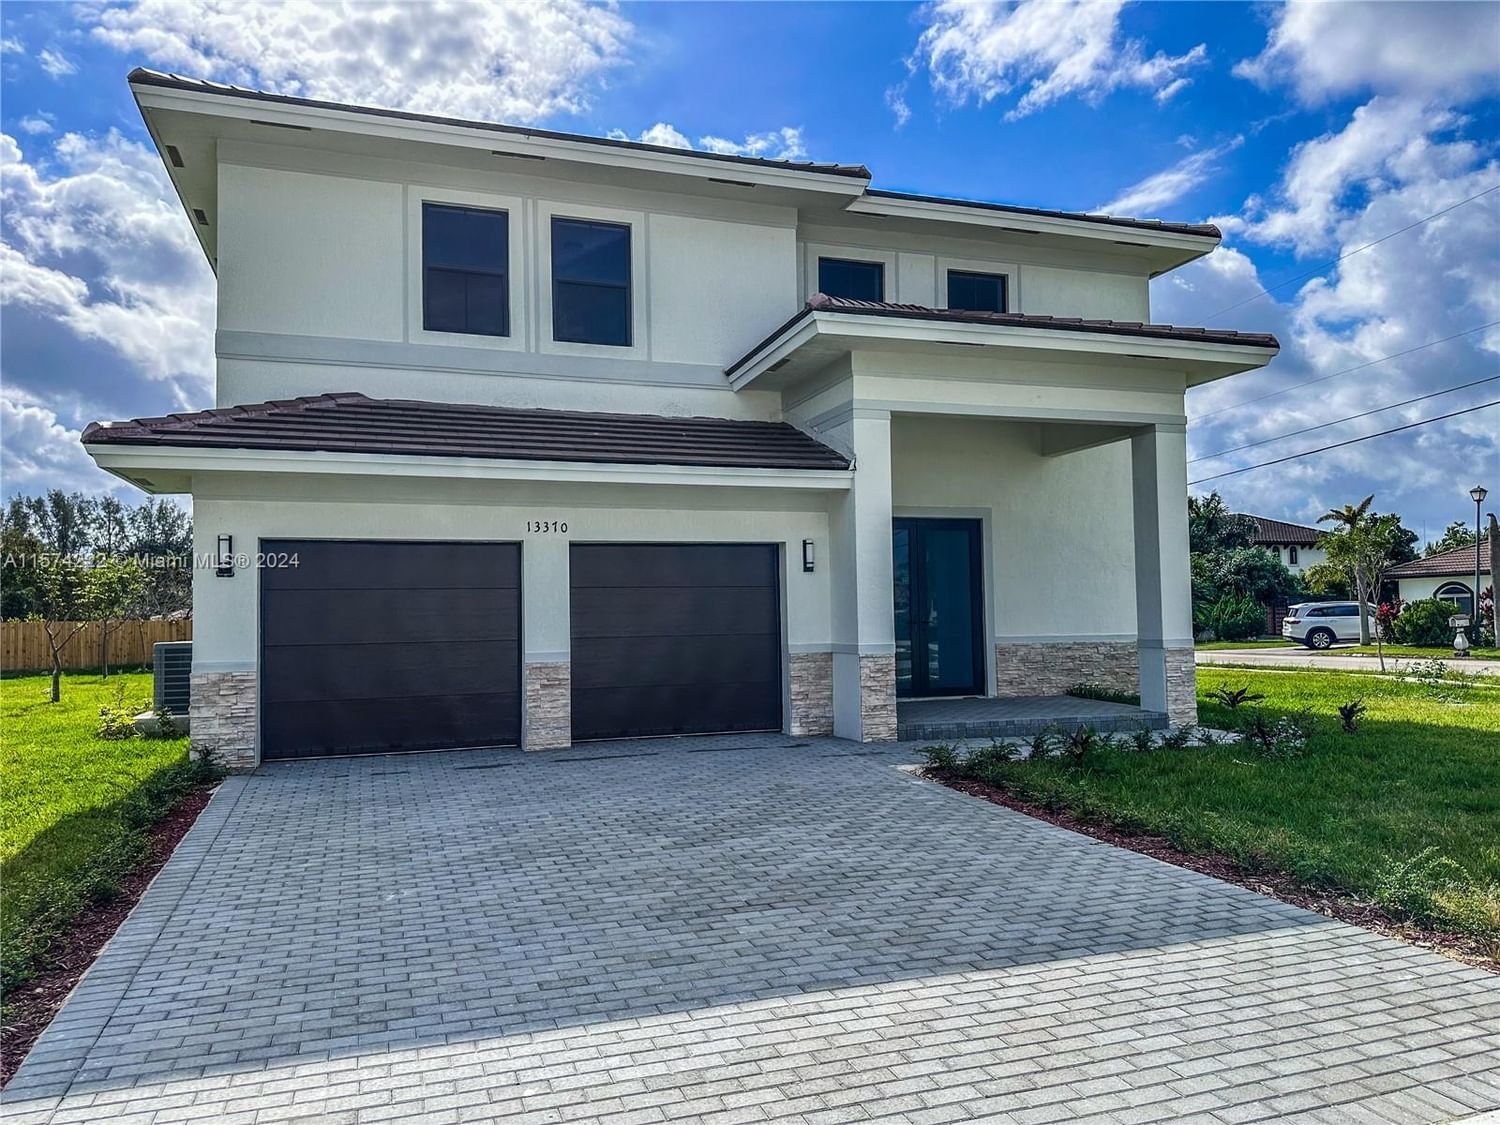 Real estate property located at 13370 197th Ter, Miami-Dade County, LEON ESTATES, Miami, FL